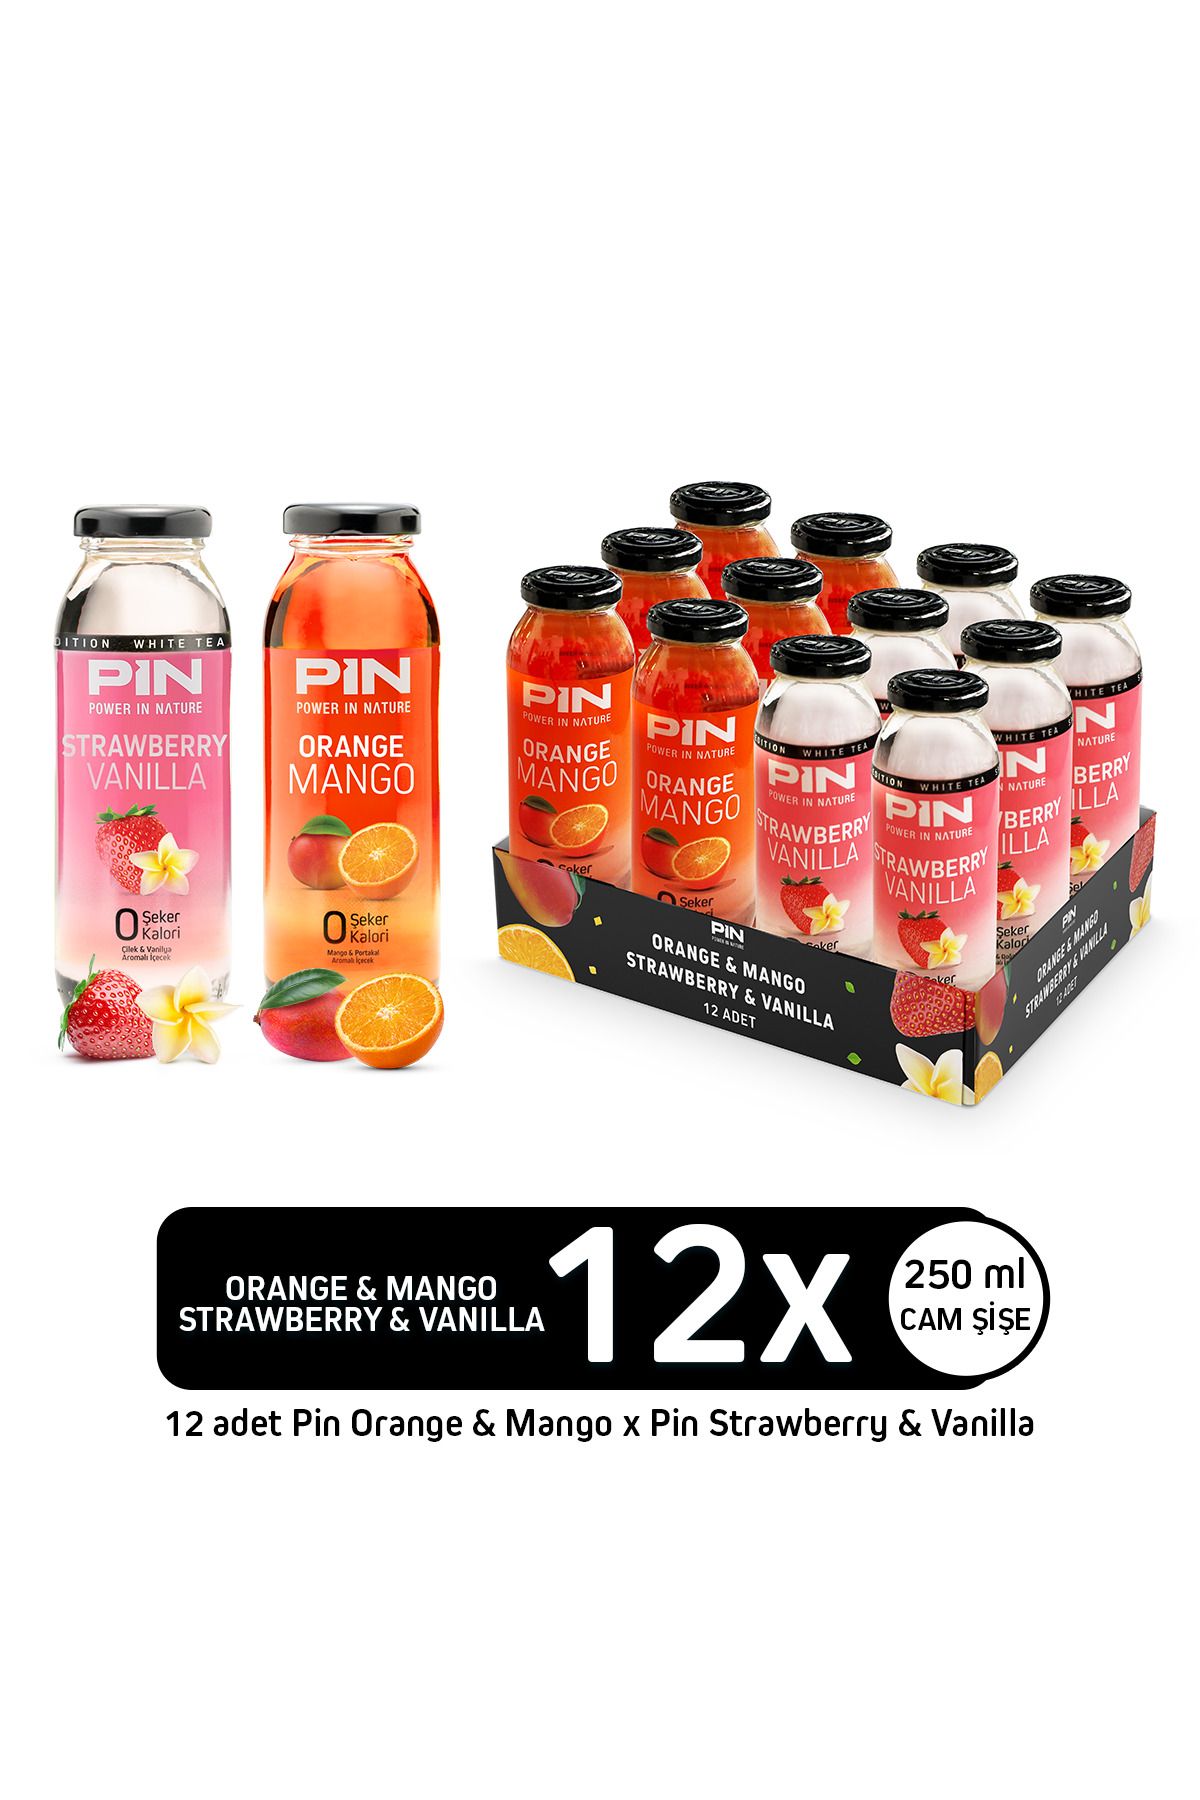 Pin Orange Mango & Strawberry Vanilla Beyaz Çaylı Özel Seri Sınırlı Sayıda Şekersiz 250 Mlx12 Adet